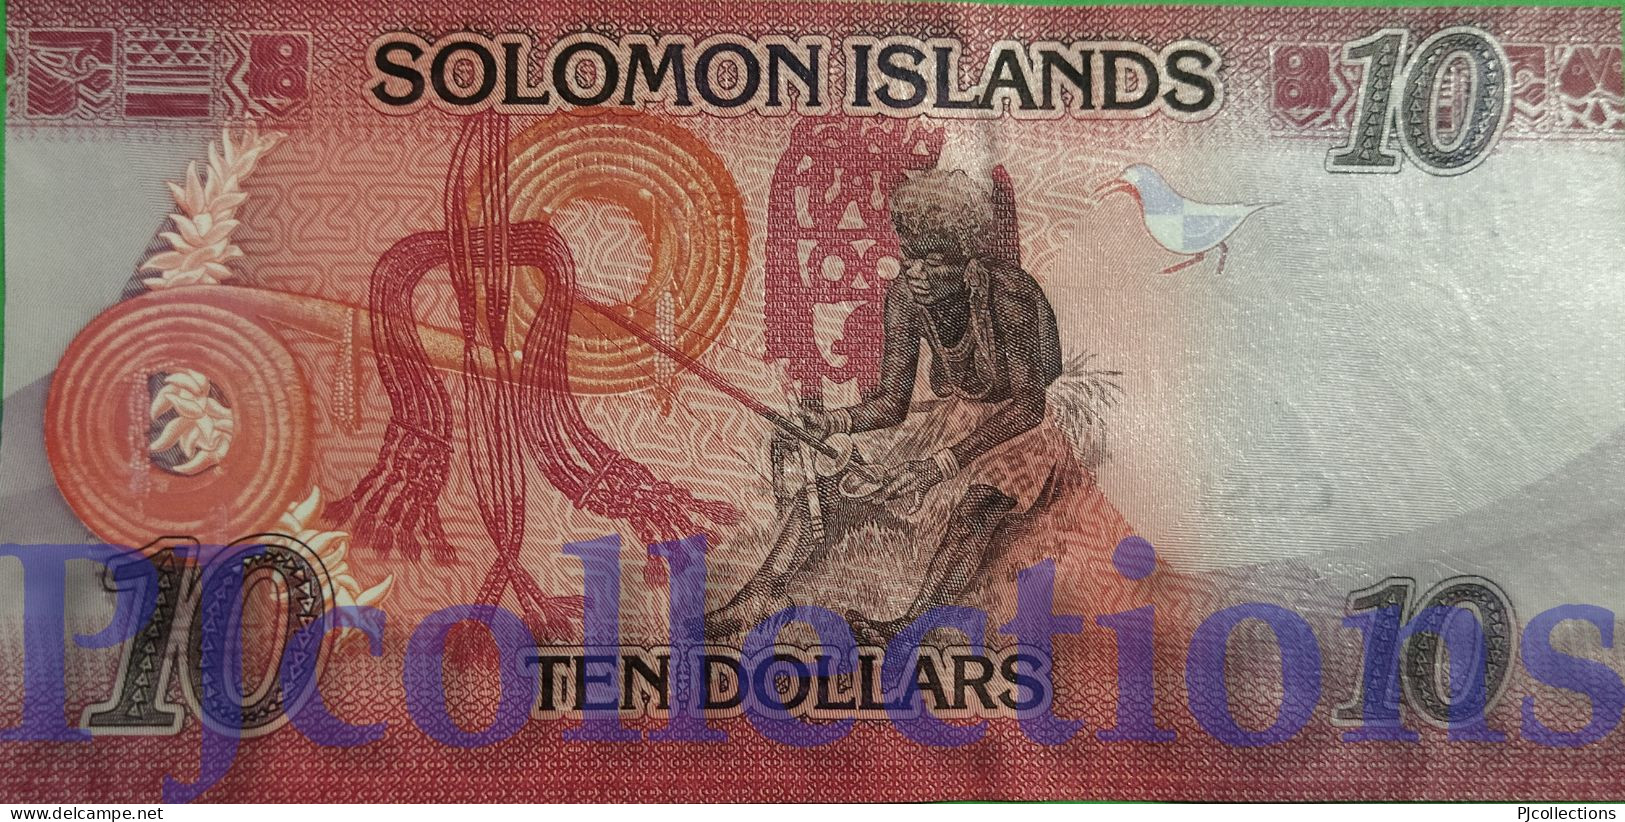 SOLOMON ISLANDS 10 DOLLARS 2017 PICK 33 UNC LOW SERIAL NUMBER "A/1 0048**" - Solomonen